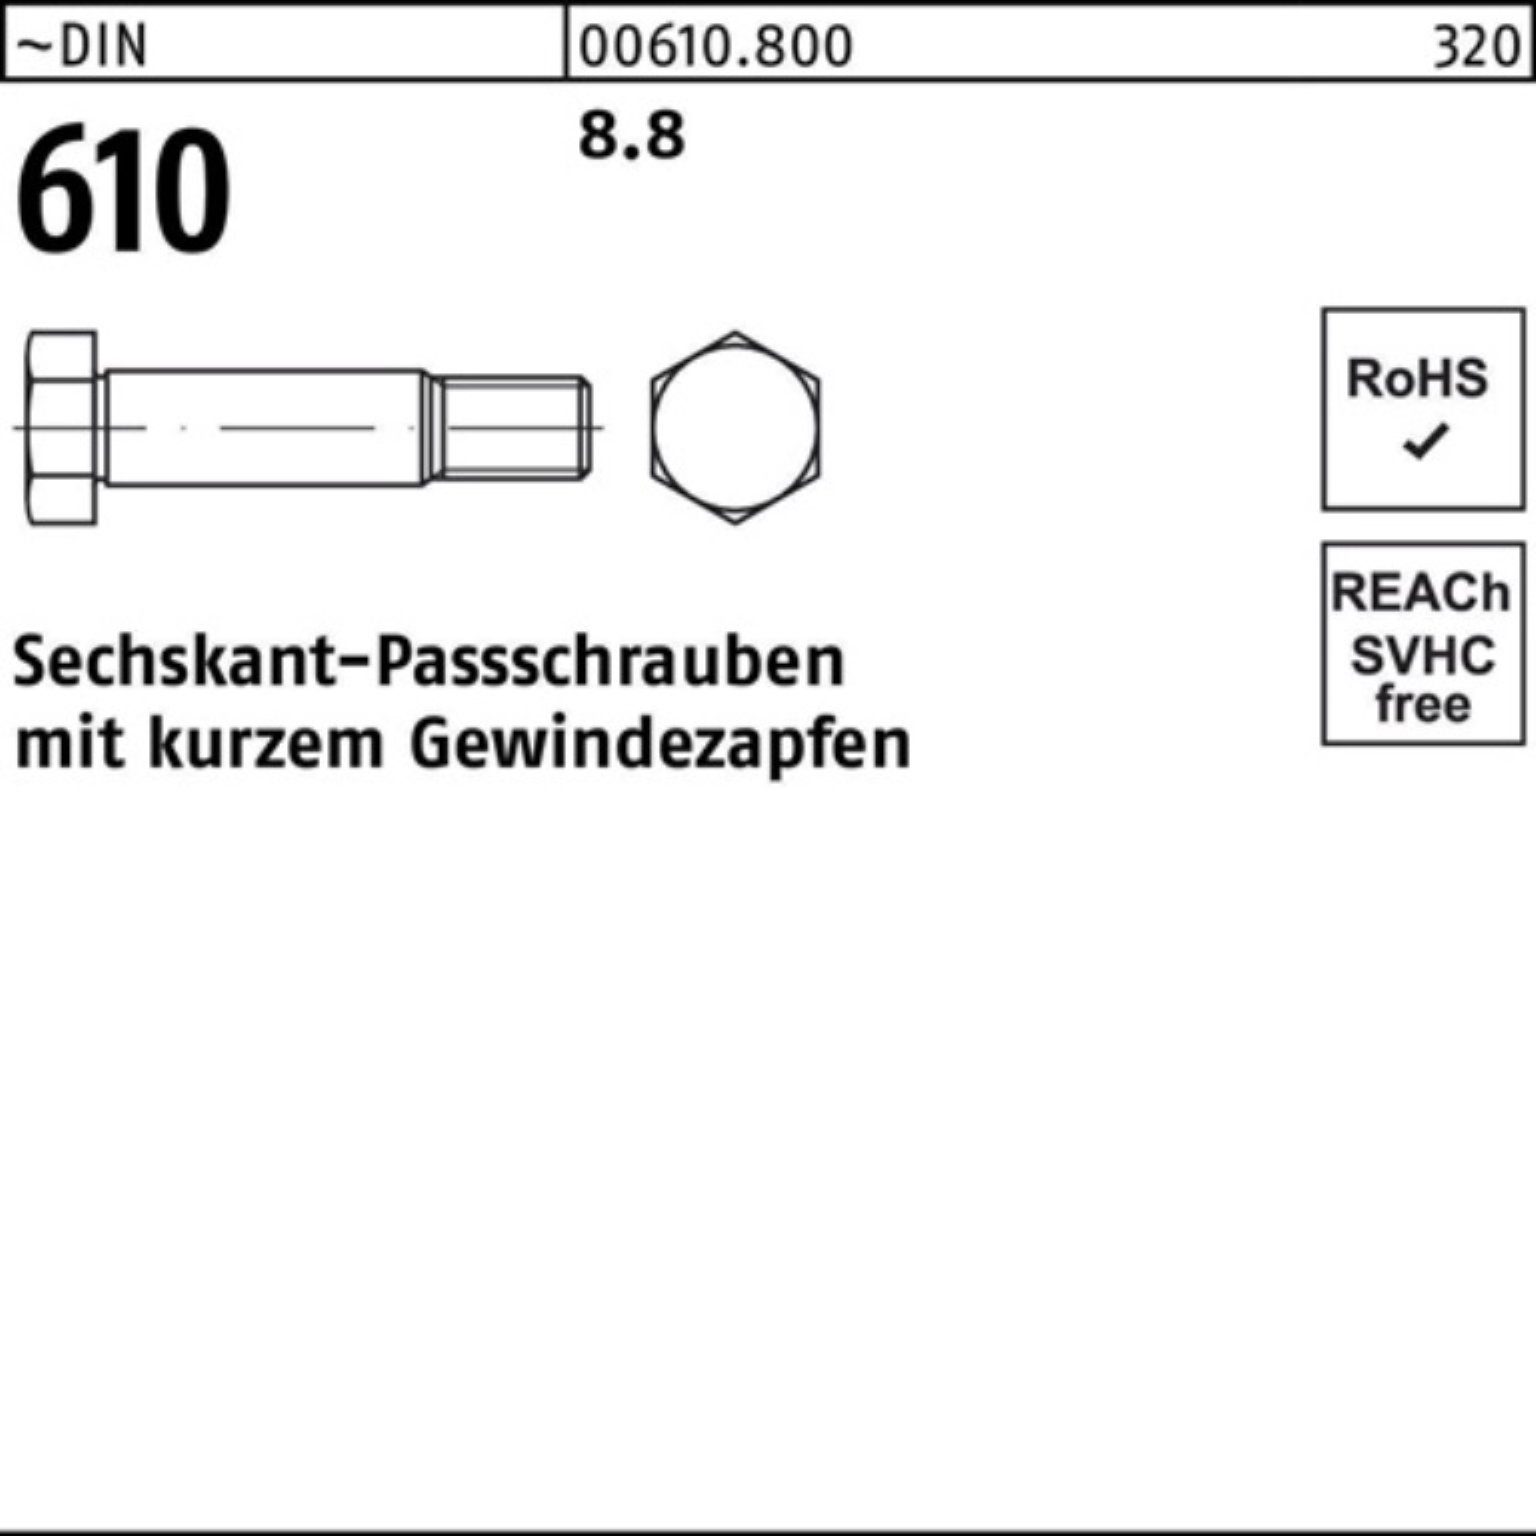 Preisreduziert Reyher Schraube 100er Pack Gewindezapfen Sechskantpassschraube kurzem 65 610 DIN M16x